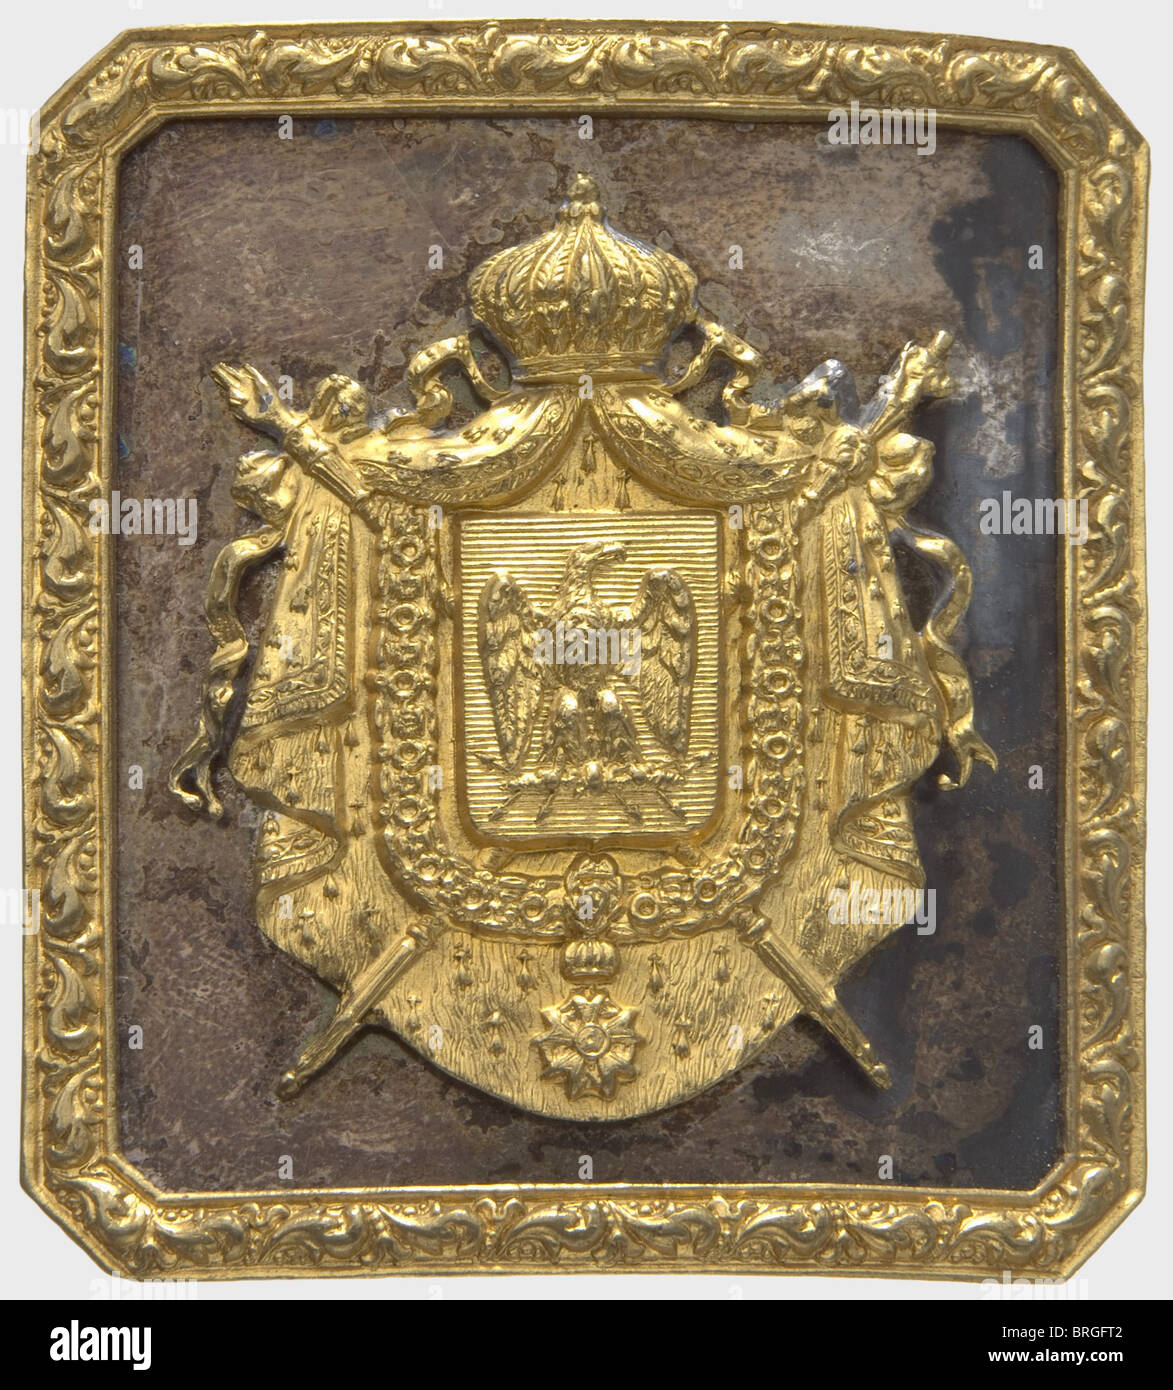 Fibbia per cintura per ufficiale, in ottone argentato e dorato con stemma  imperiale sovrapposto sul lato opposto. 55 x 60 mm. Cfr  Blanchgorge/Baudouin. ''cent-gardes' pour un empereur' p. 313 Ill. 117.  Questo